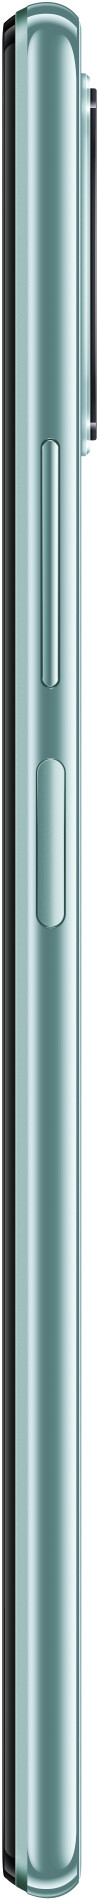 Xiaomi Mi 11 Lite 128GB (8GB RAM)